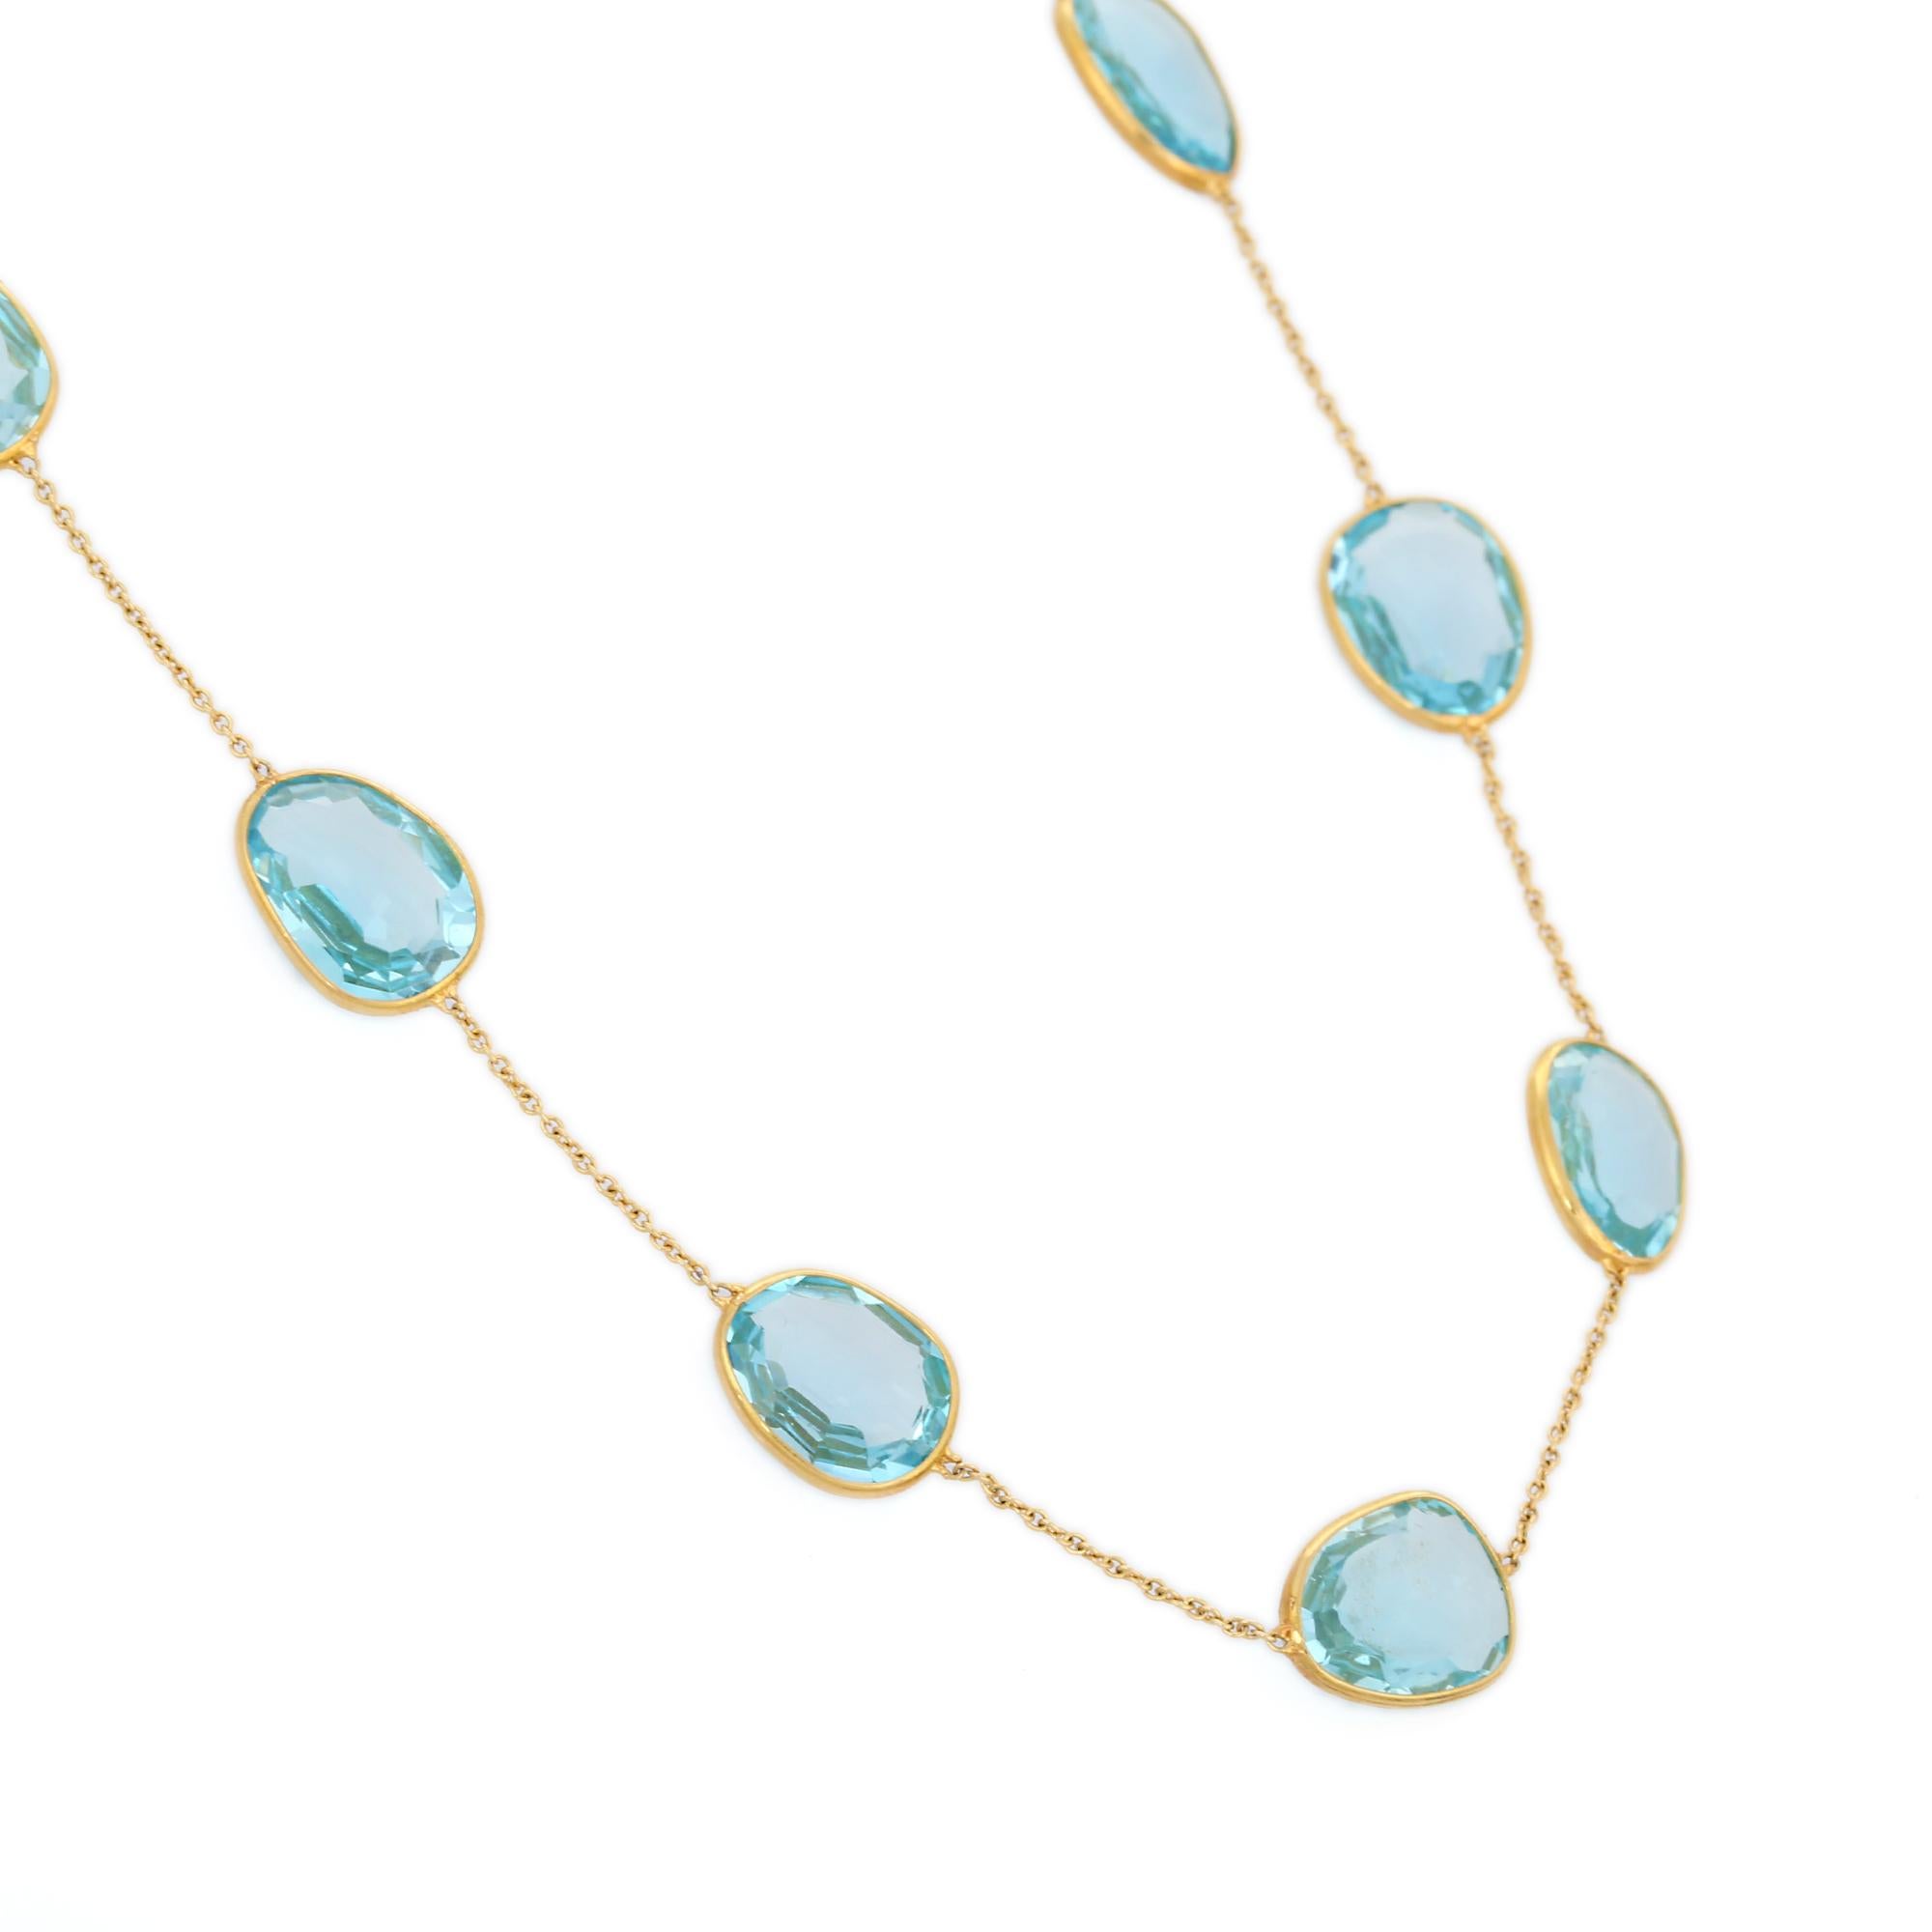 Blaue Topas-Halskette aus 18 Karat Gold, besetzt mit Topas-Edelsteinen im Ovalschliff.
Ergänzen Sie Ihren Look mit dieser eleganten Blautopas-Kette. Dieses atemberaubende Schmuckstück wertet einen Freizeitlook oder ein elegantes Outfit sofort auf.